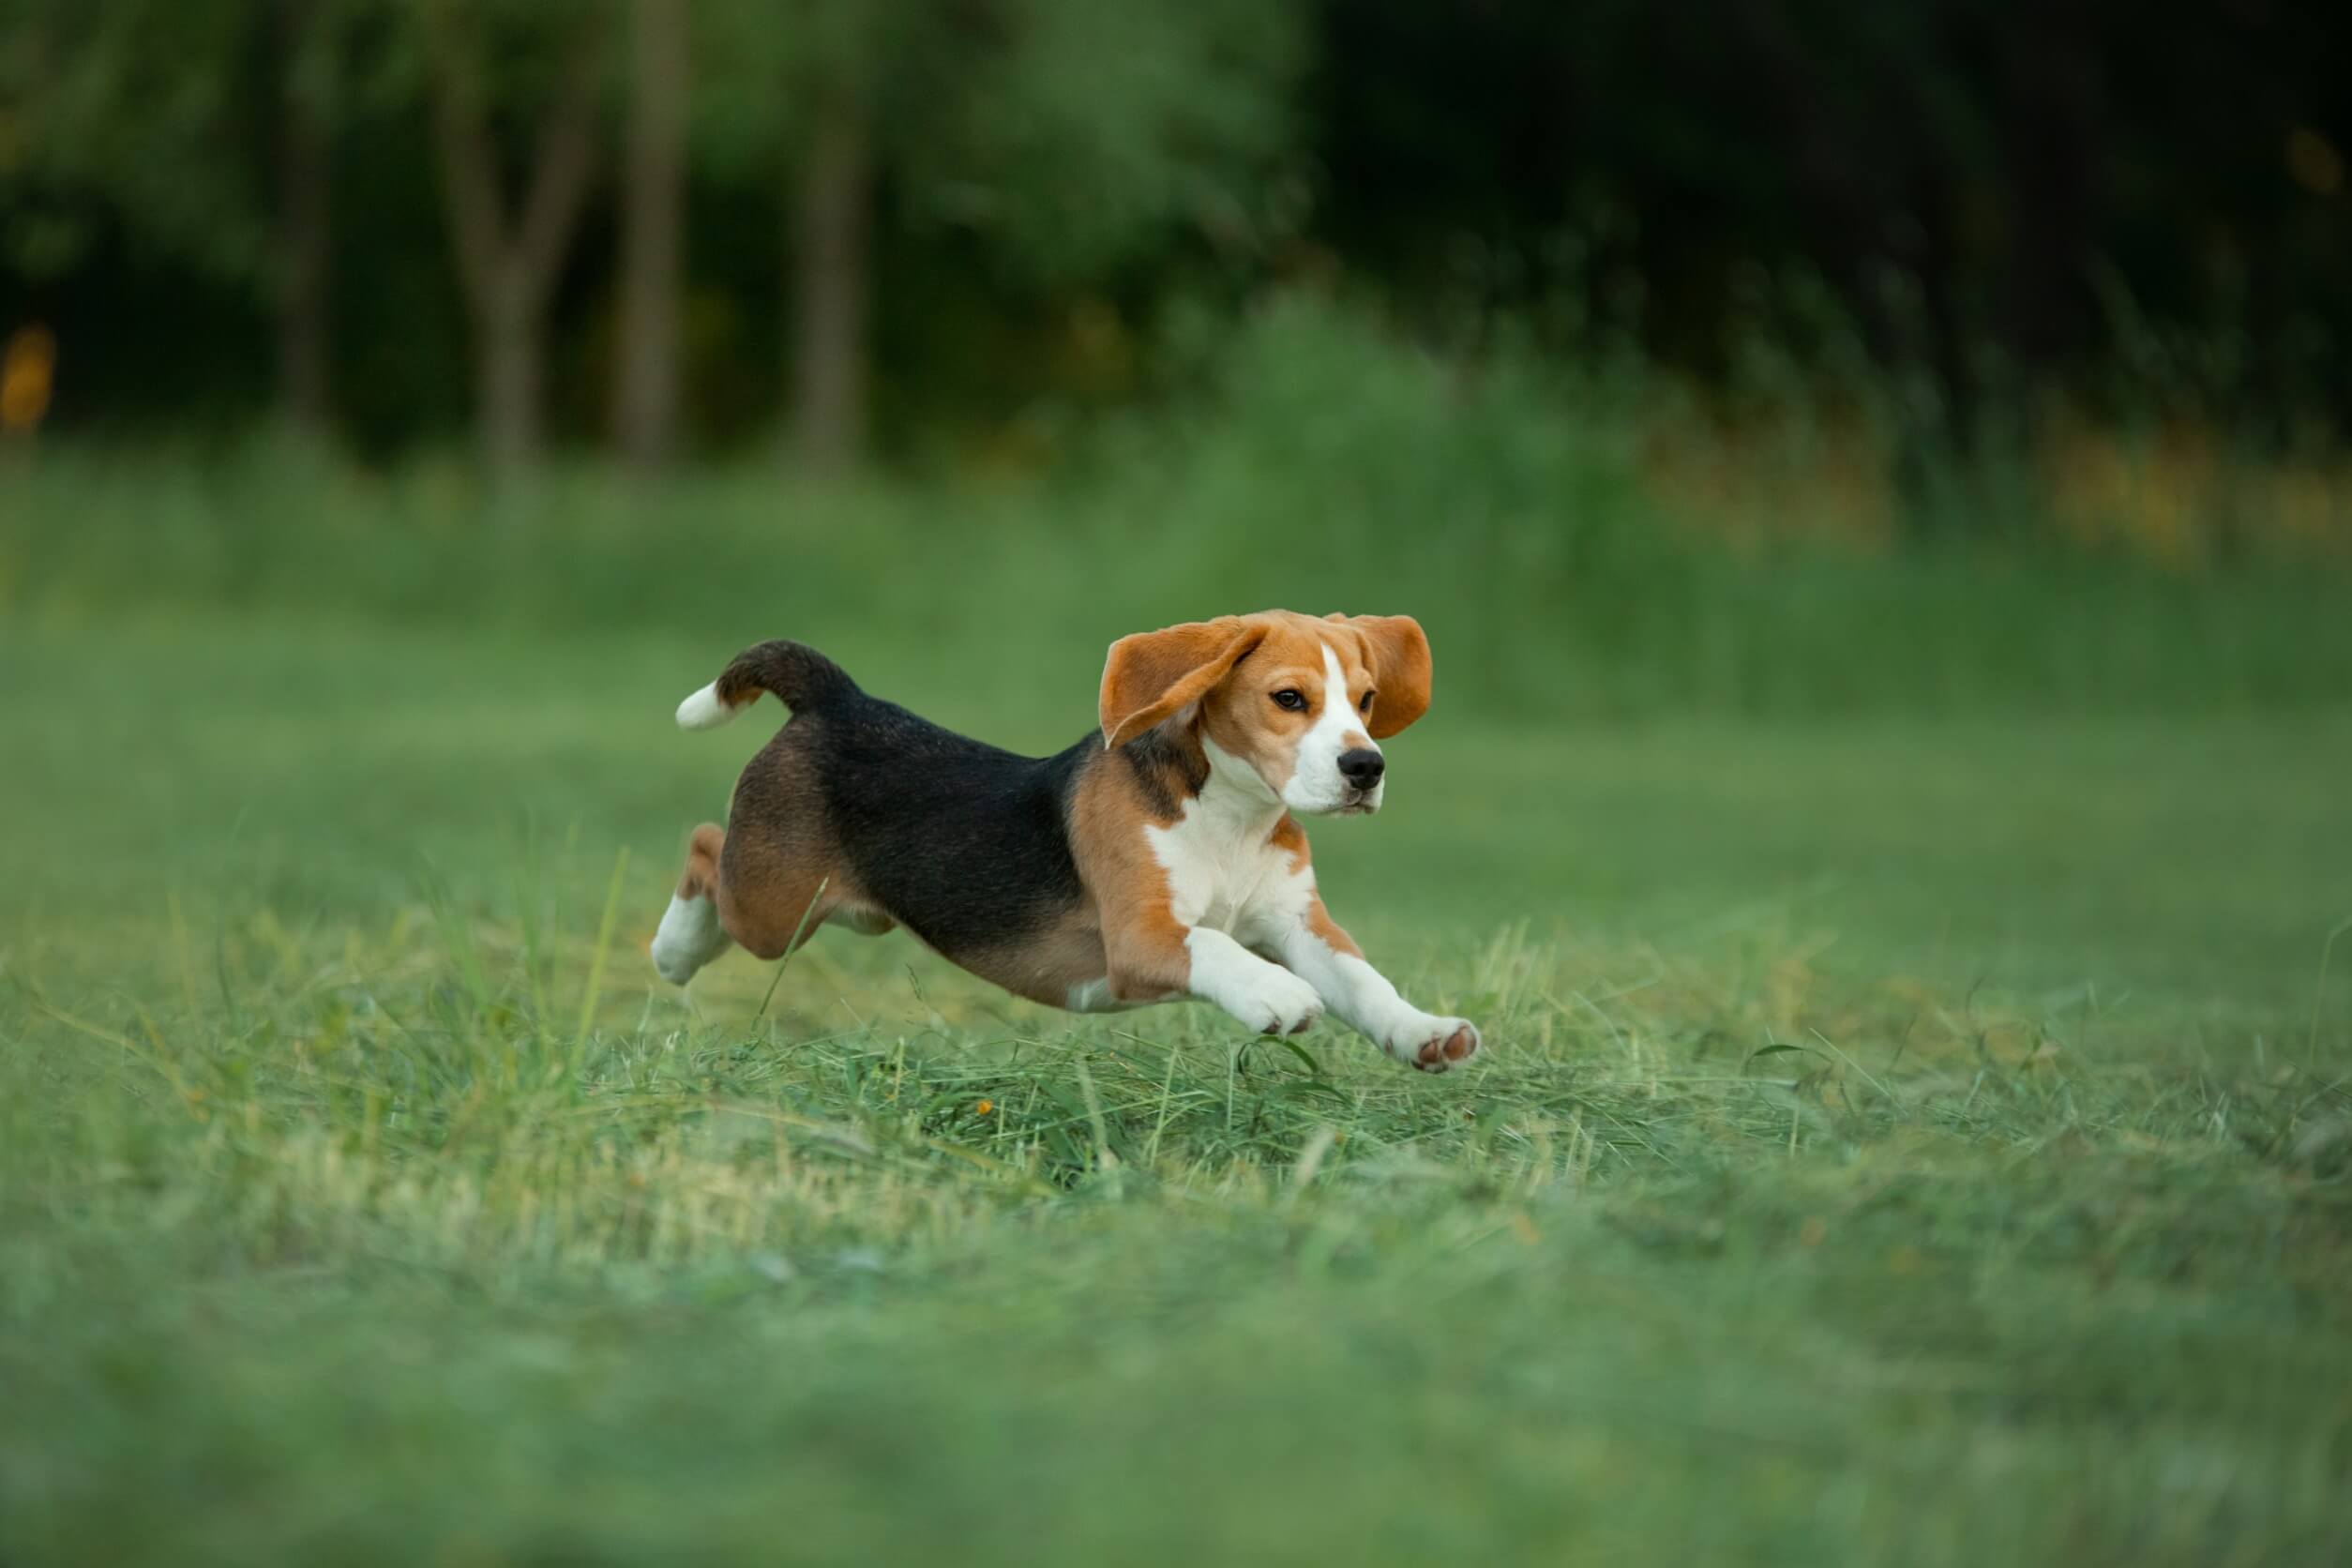 A beagle.